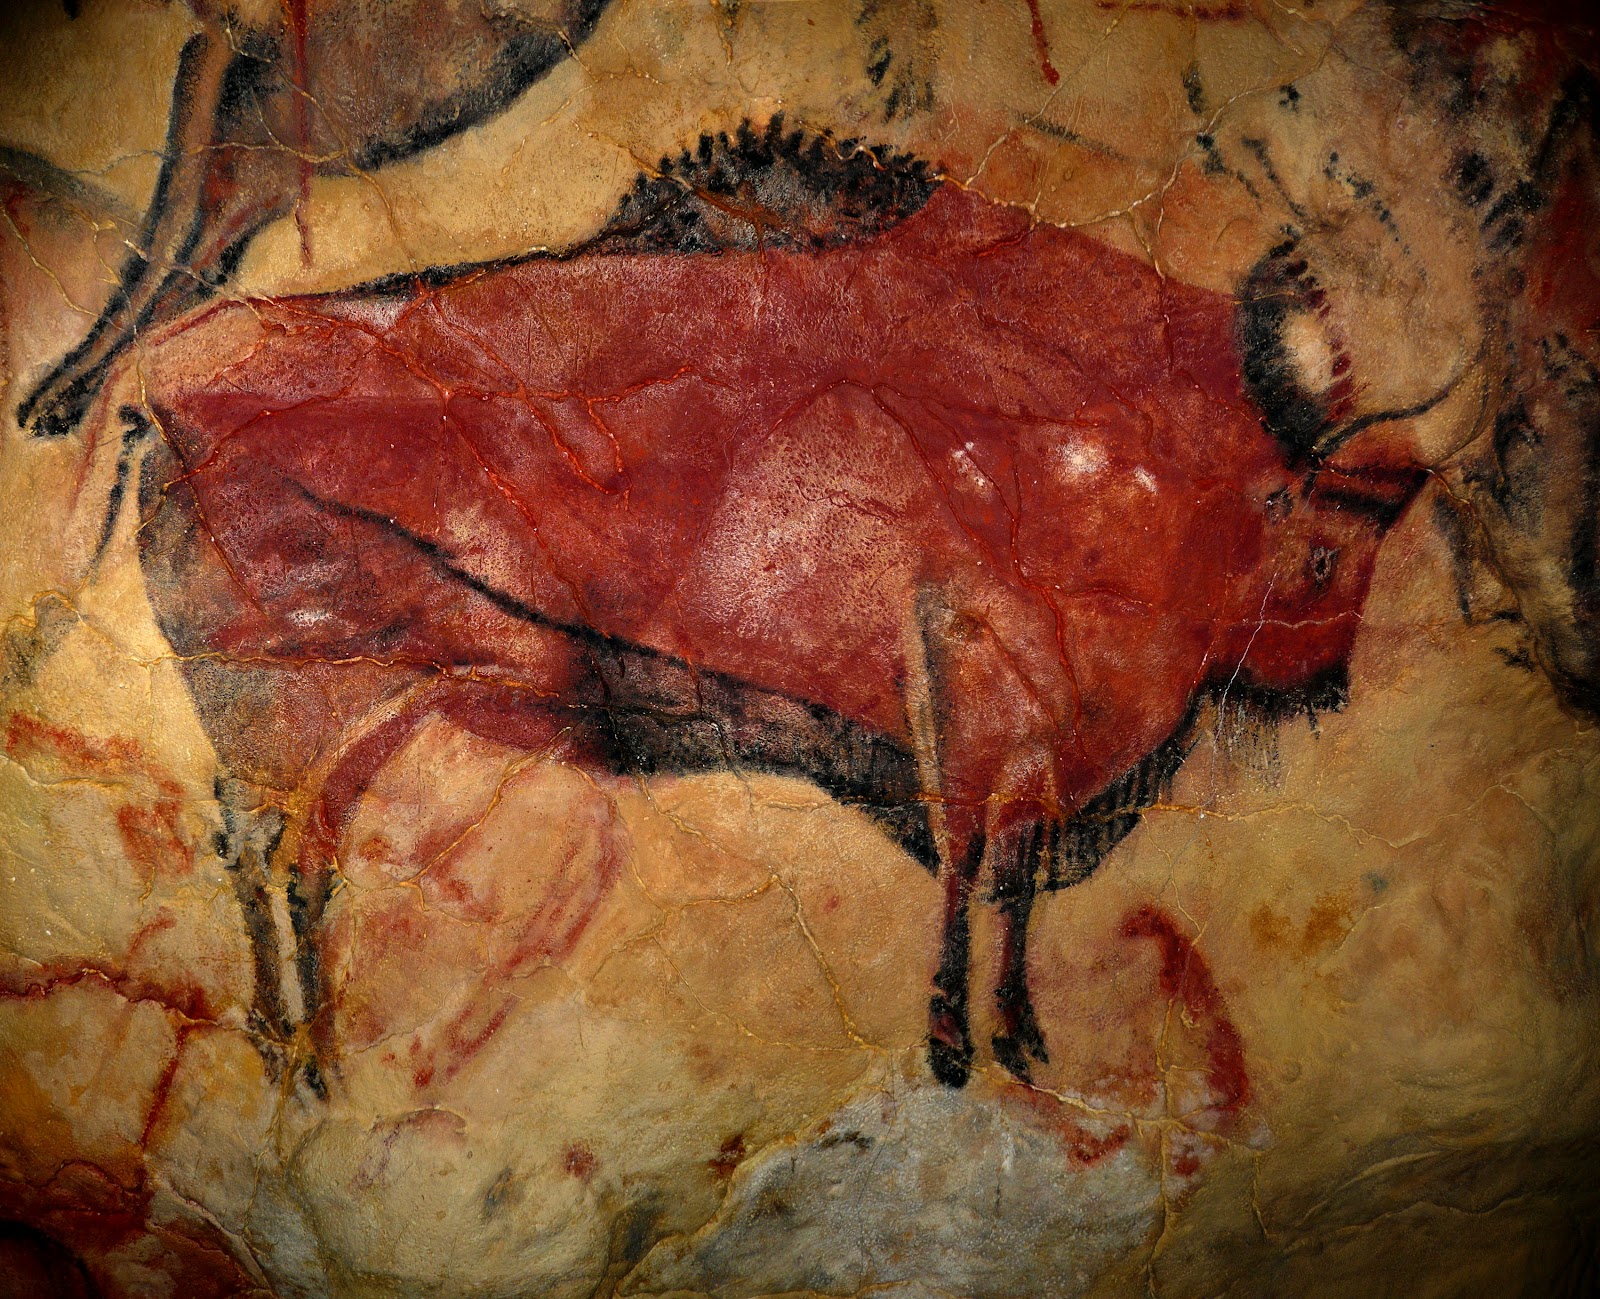 Pintura rupestre - Wikipedia, la enciclopedia libre